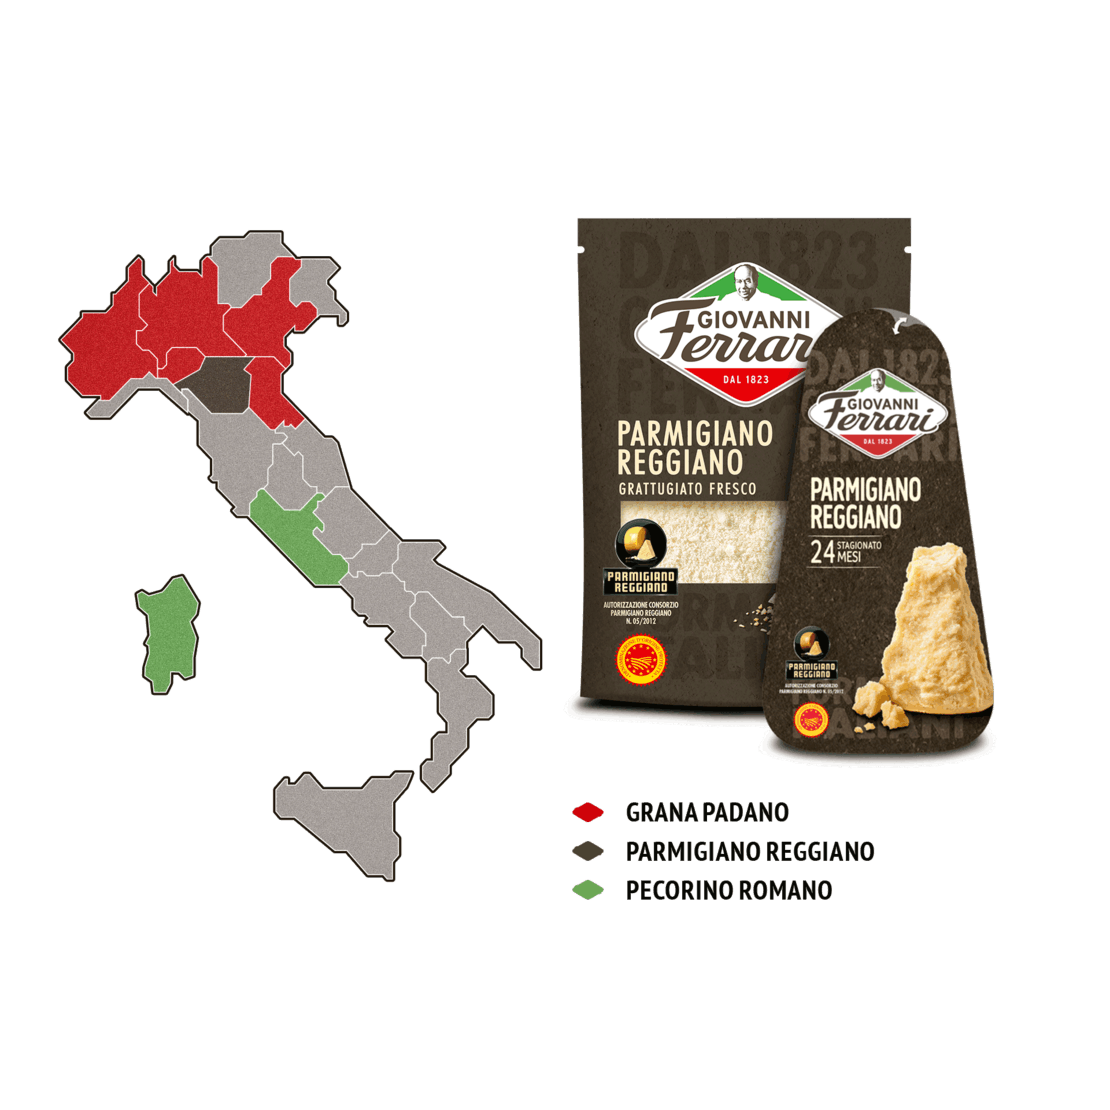  Parmigiano Reggiano aus den Provinzen Parma, Reggio Emilia, Modena und Bologna